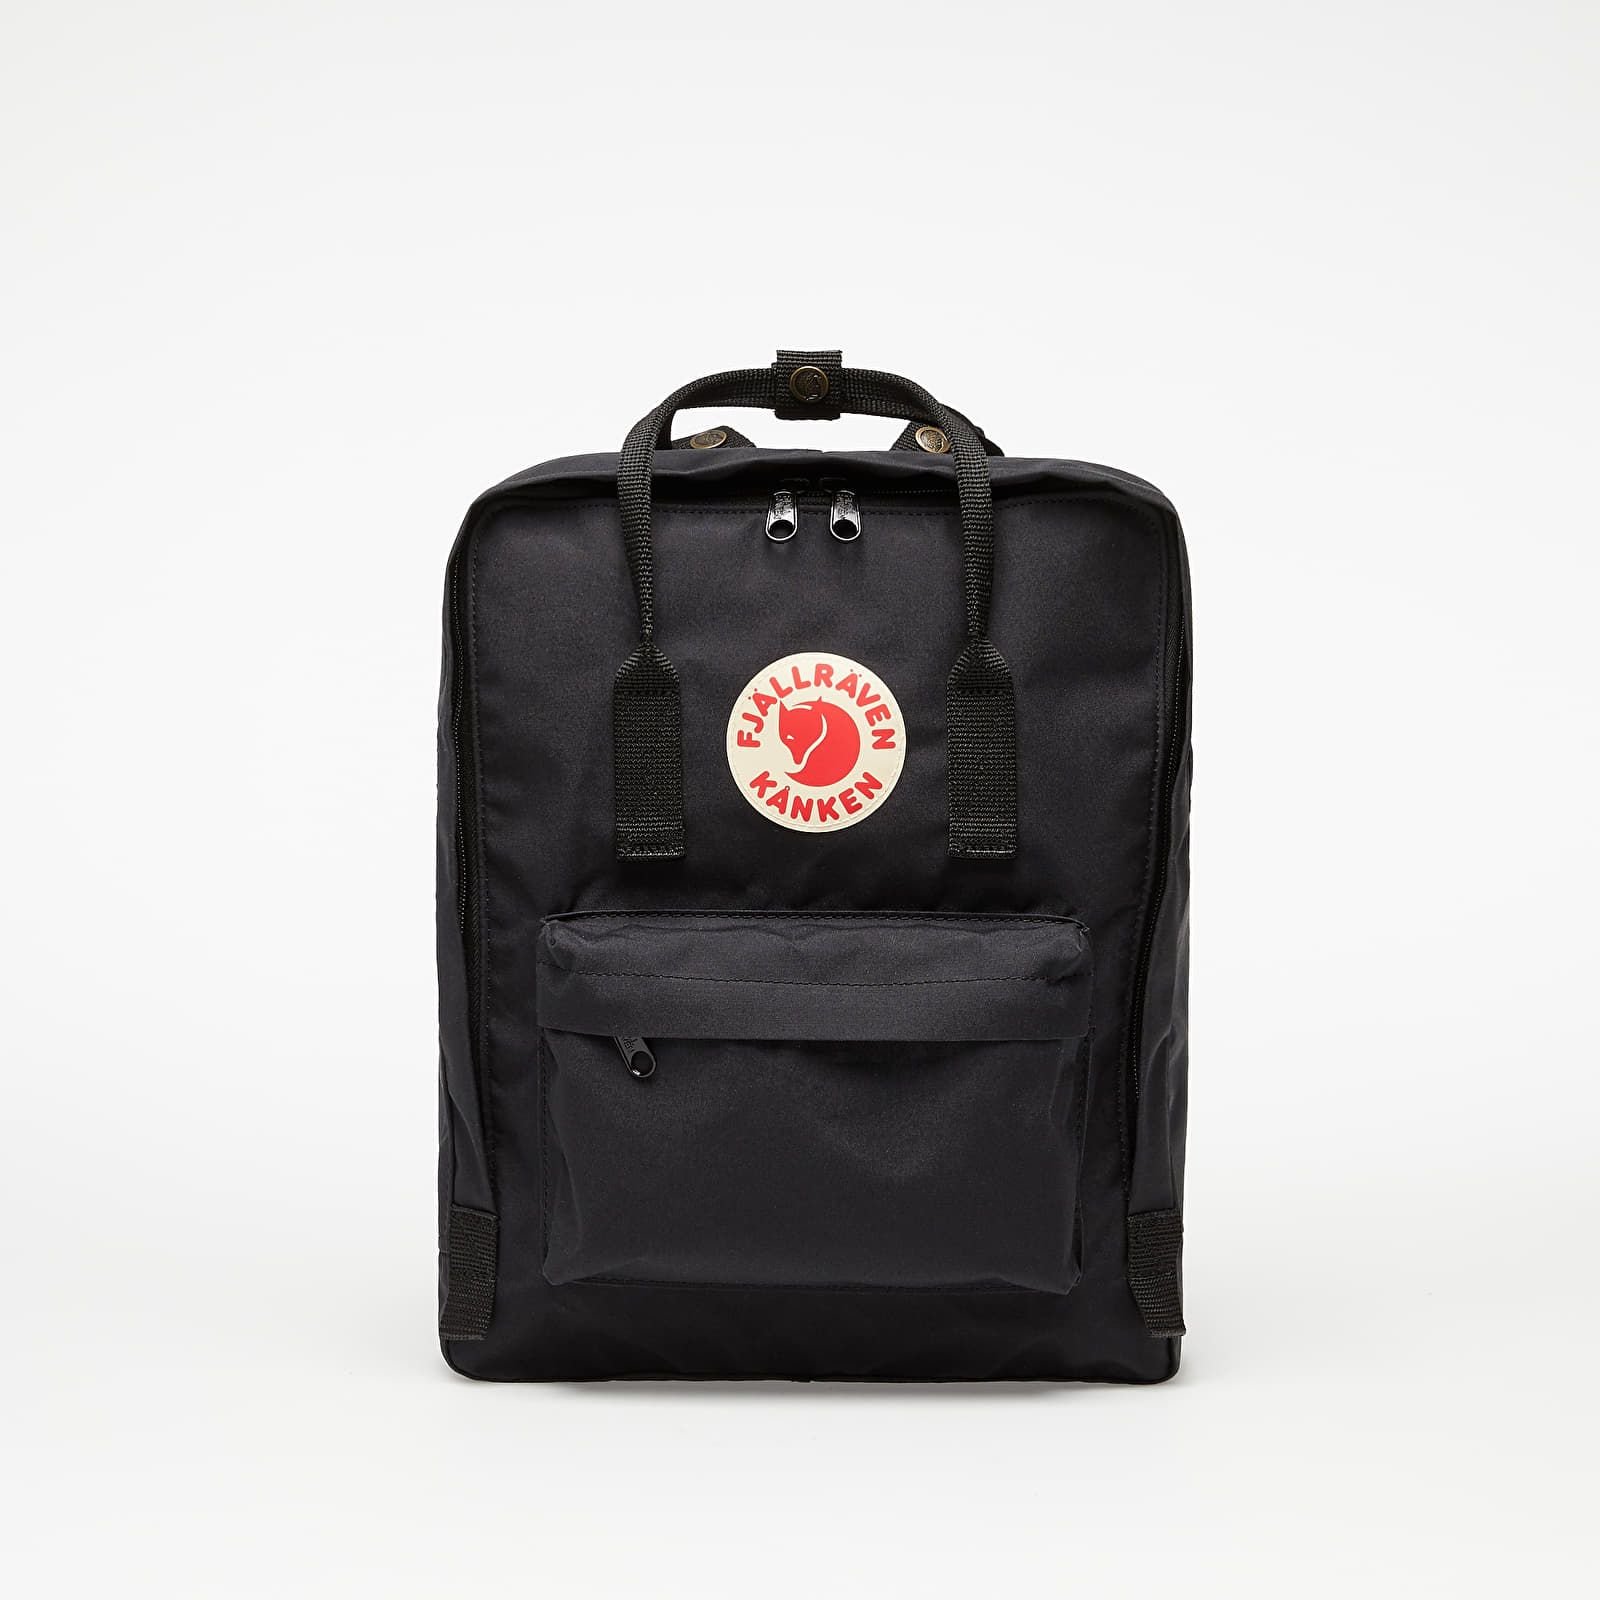 Móda REFRESHER: Spríjemni si návrat do školy či na pracovisko novým ruksakom od značiek Y-3, Eastpak alebo Fjällräven